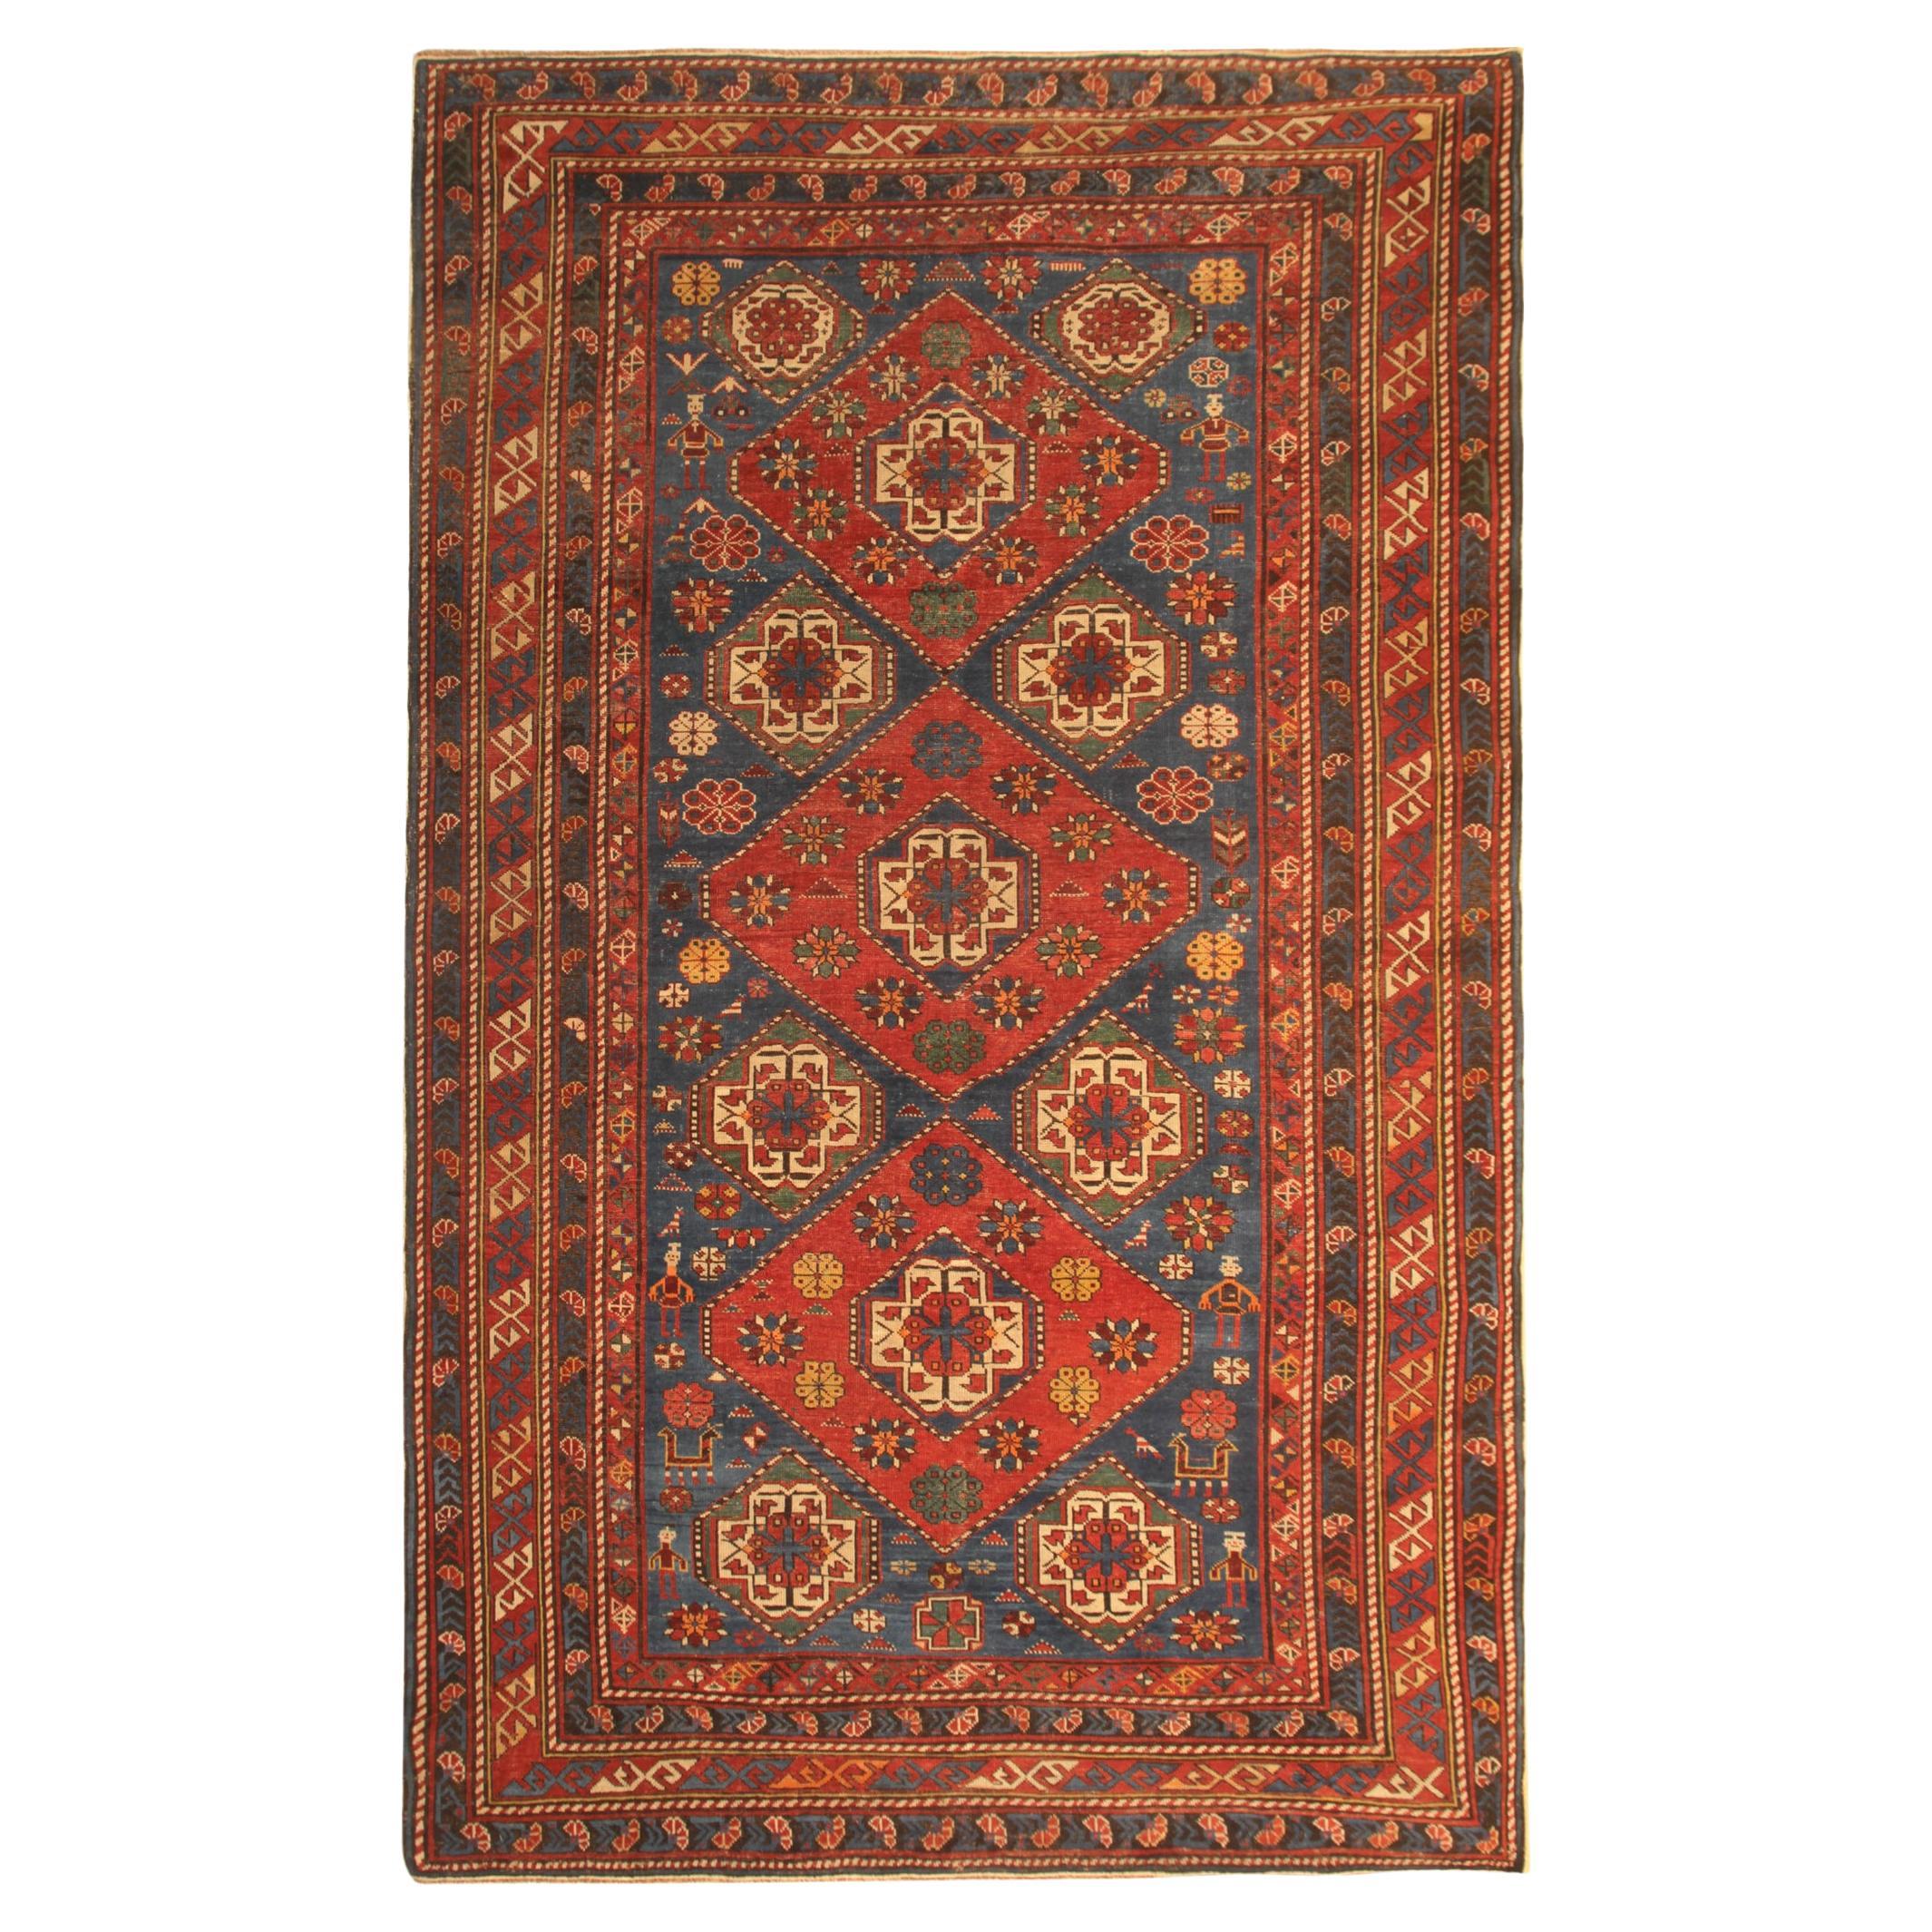 Seltener antiker kaukasischer orientalischer Teppich, handgefertigter Teppich aus Shirvan Area CHR56